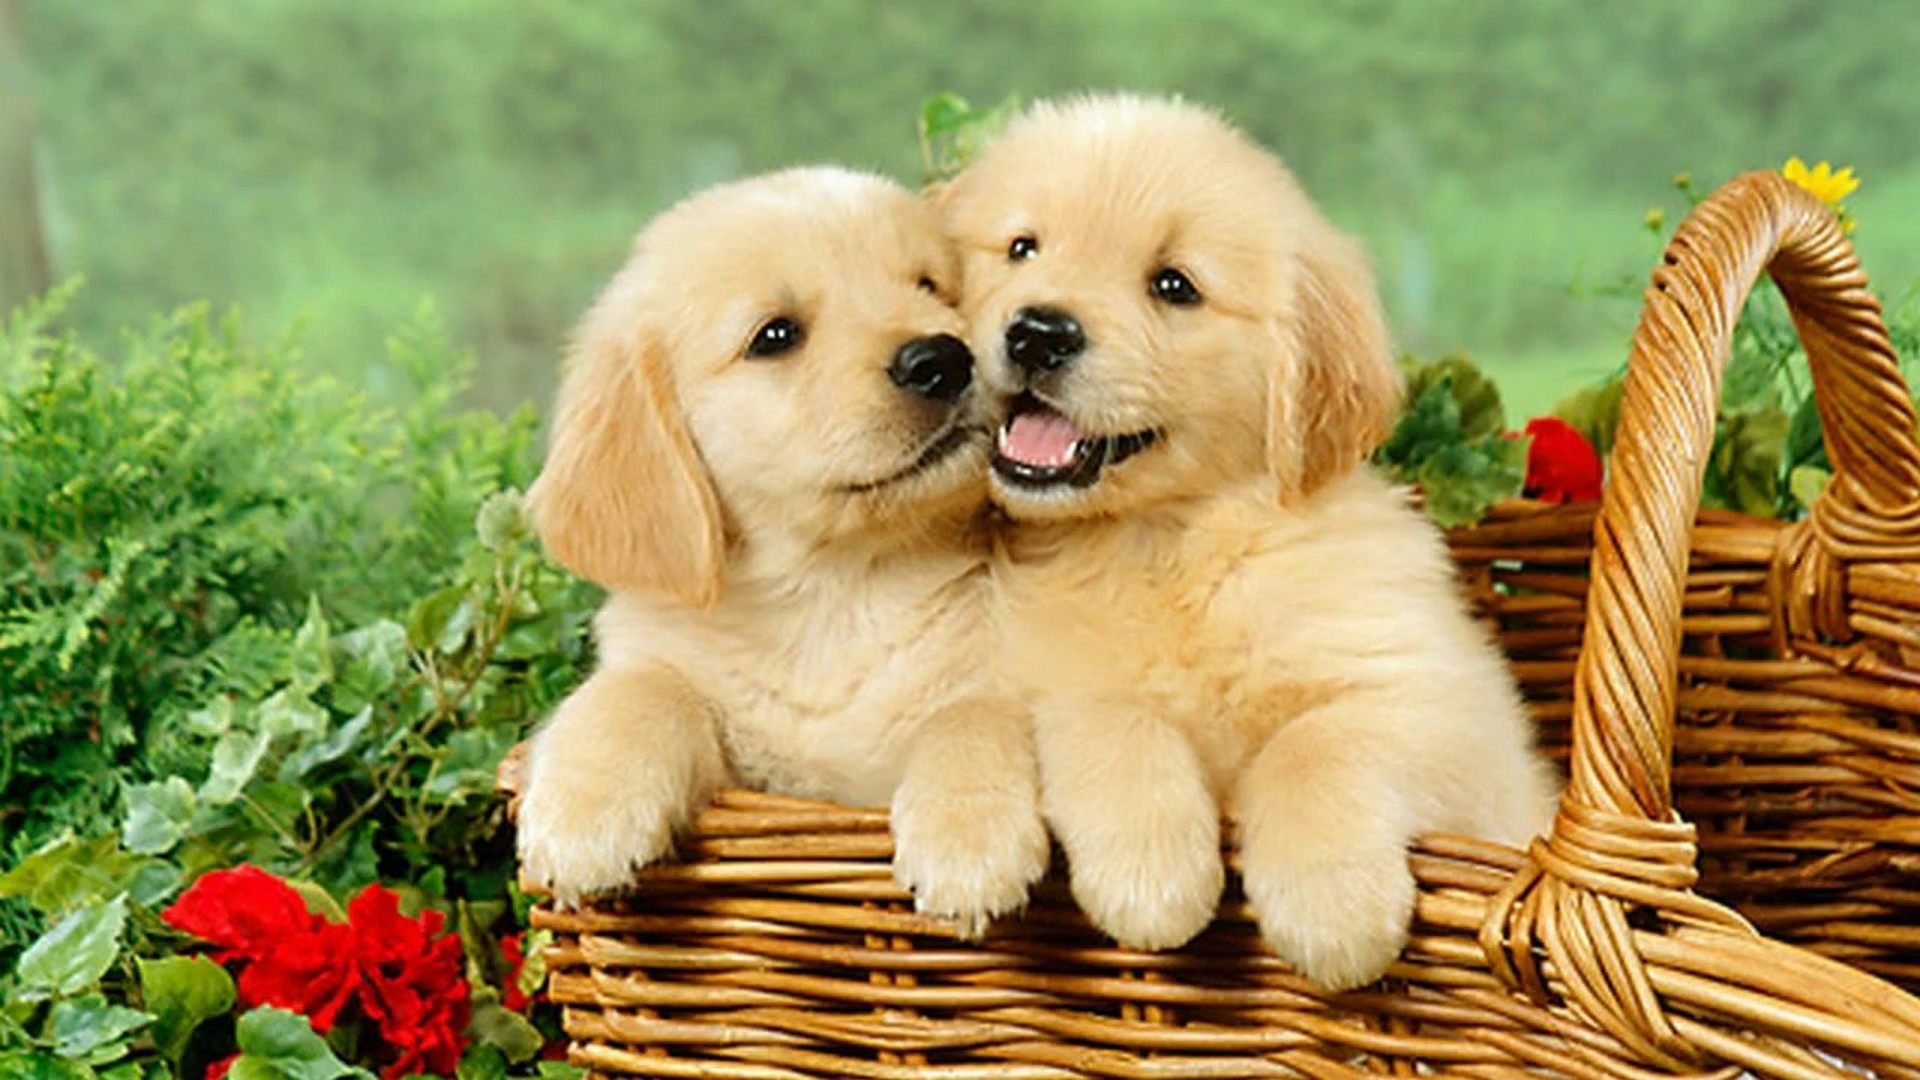 Cute Puppies Desktop Backgrounds HD Resolution 1920x1080